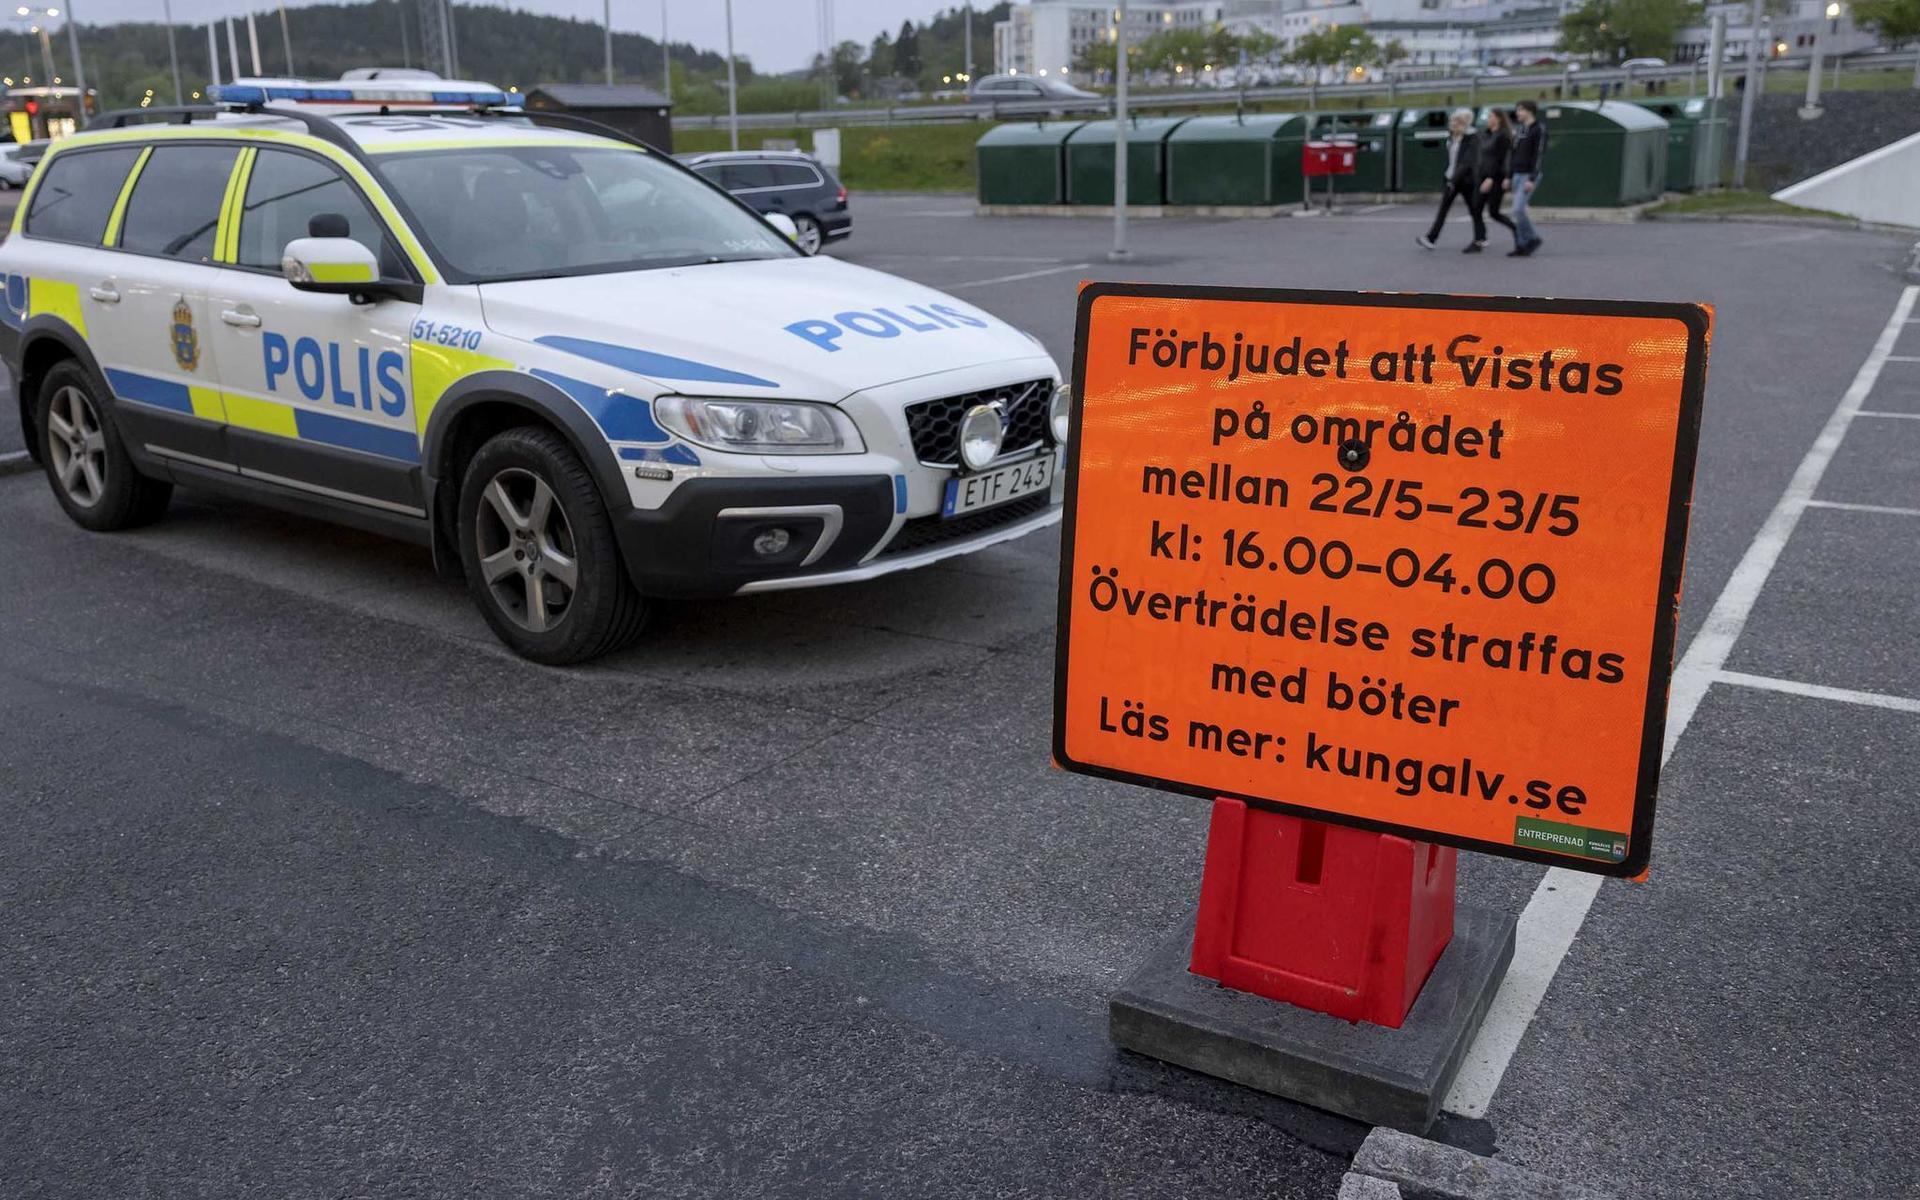 Många bilburna samlades i Kungälv på lördagskvällen, men enligt polisen gick det lugnt till. 